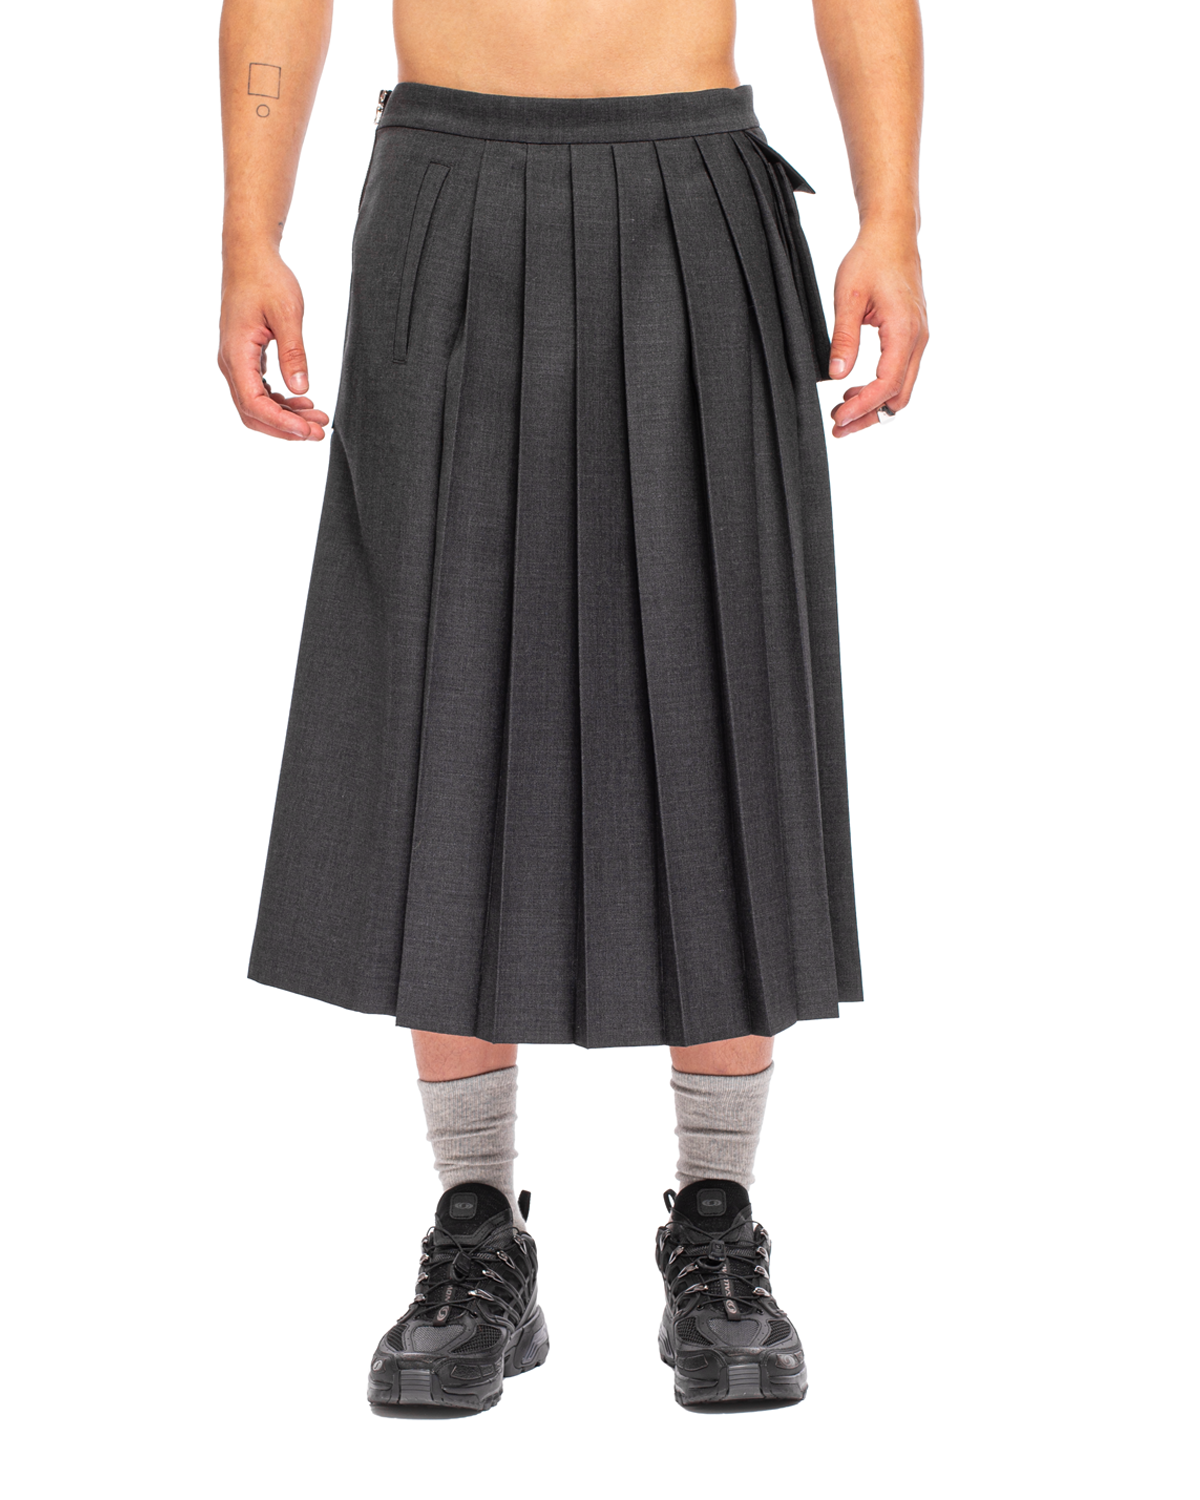 UC2B4601-1 Zip Skirt Charcoal